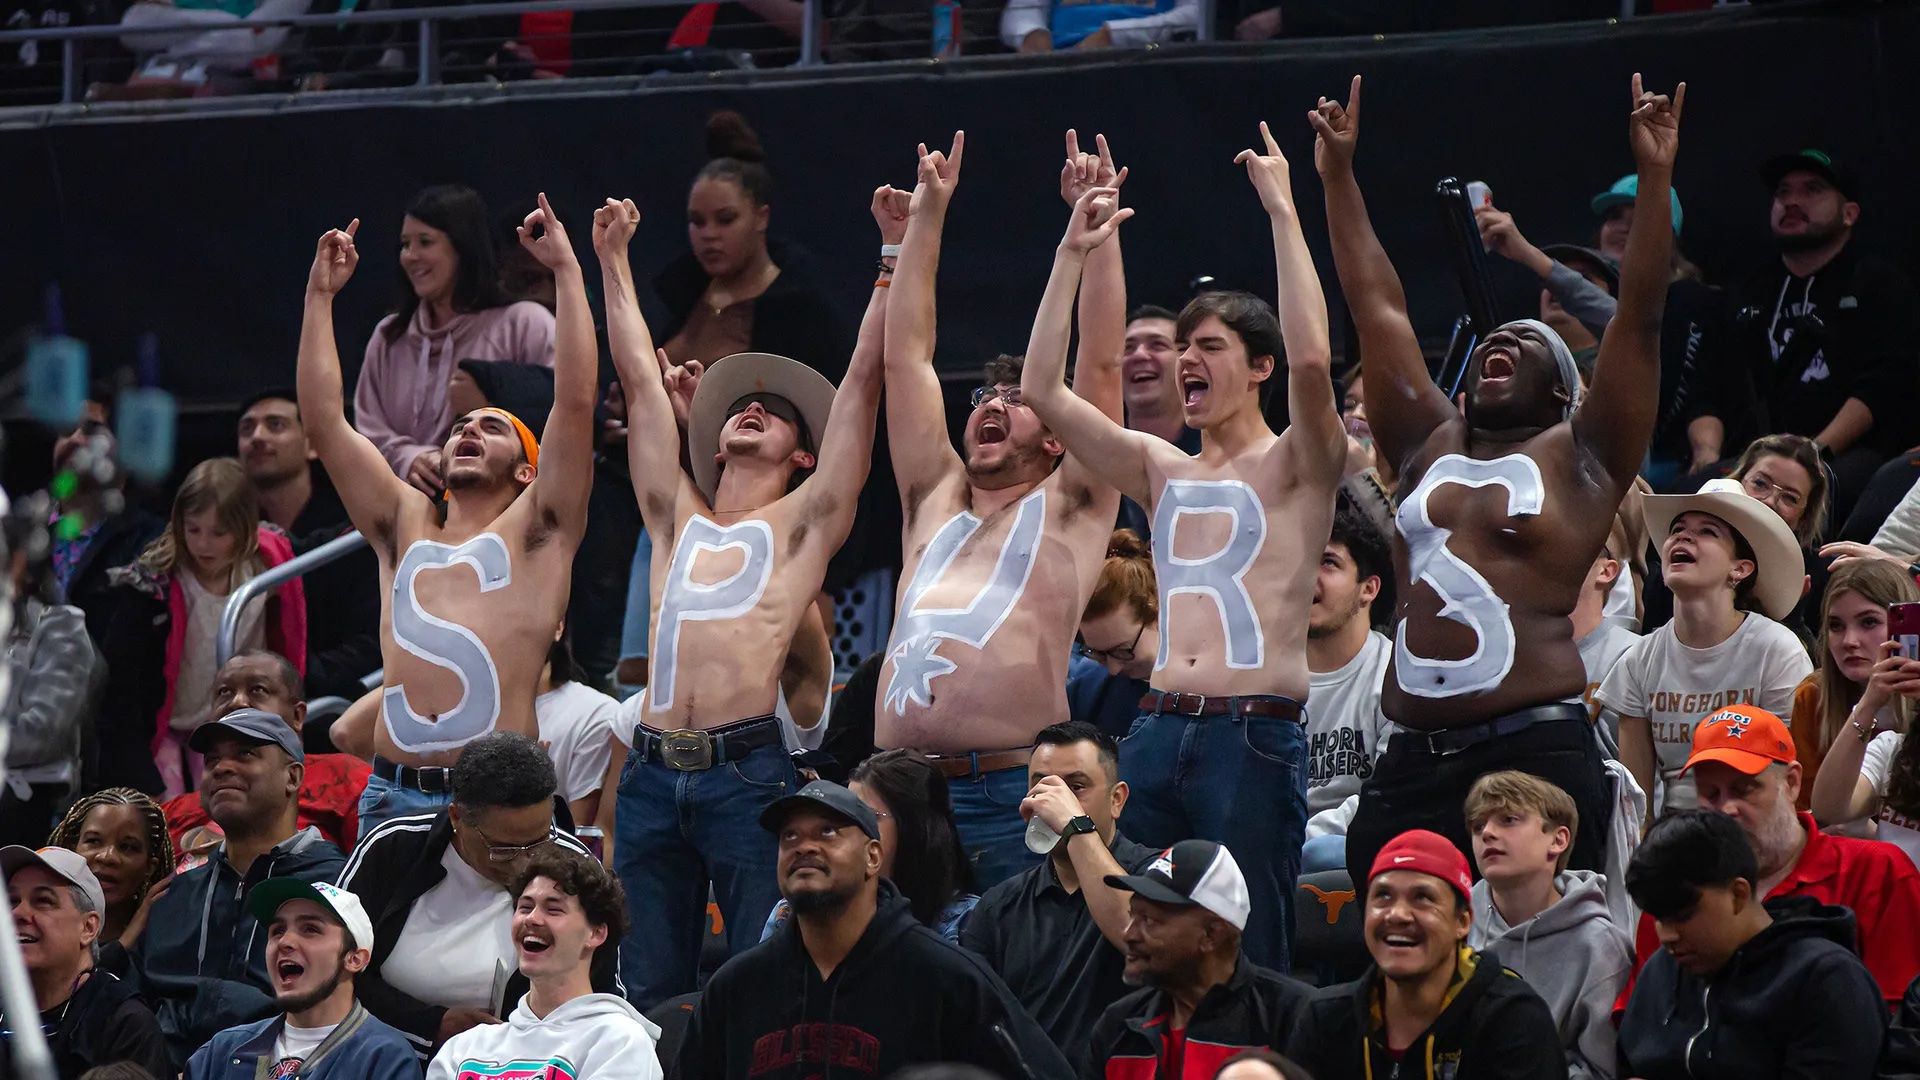 Spurs fans at an Austin basketball game